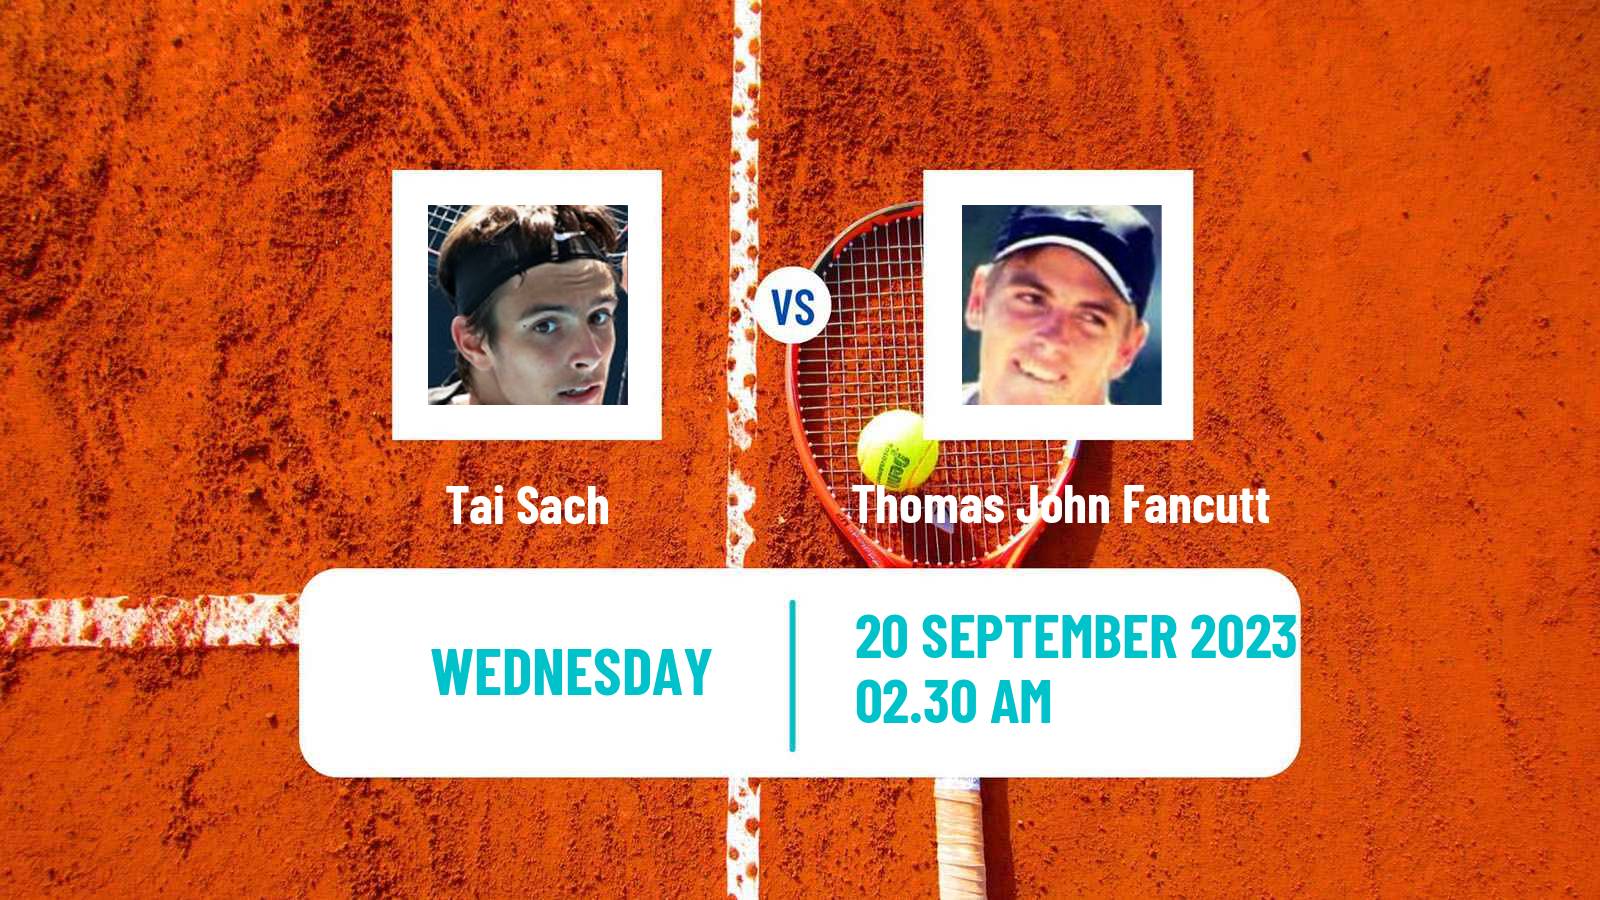 Tennis ITF M25 Darwin 2 Men Tai Sach - Thomas John Fancutt